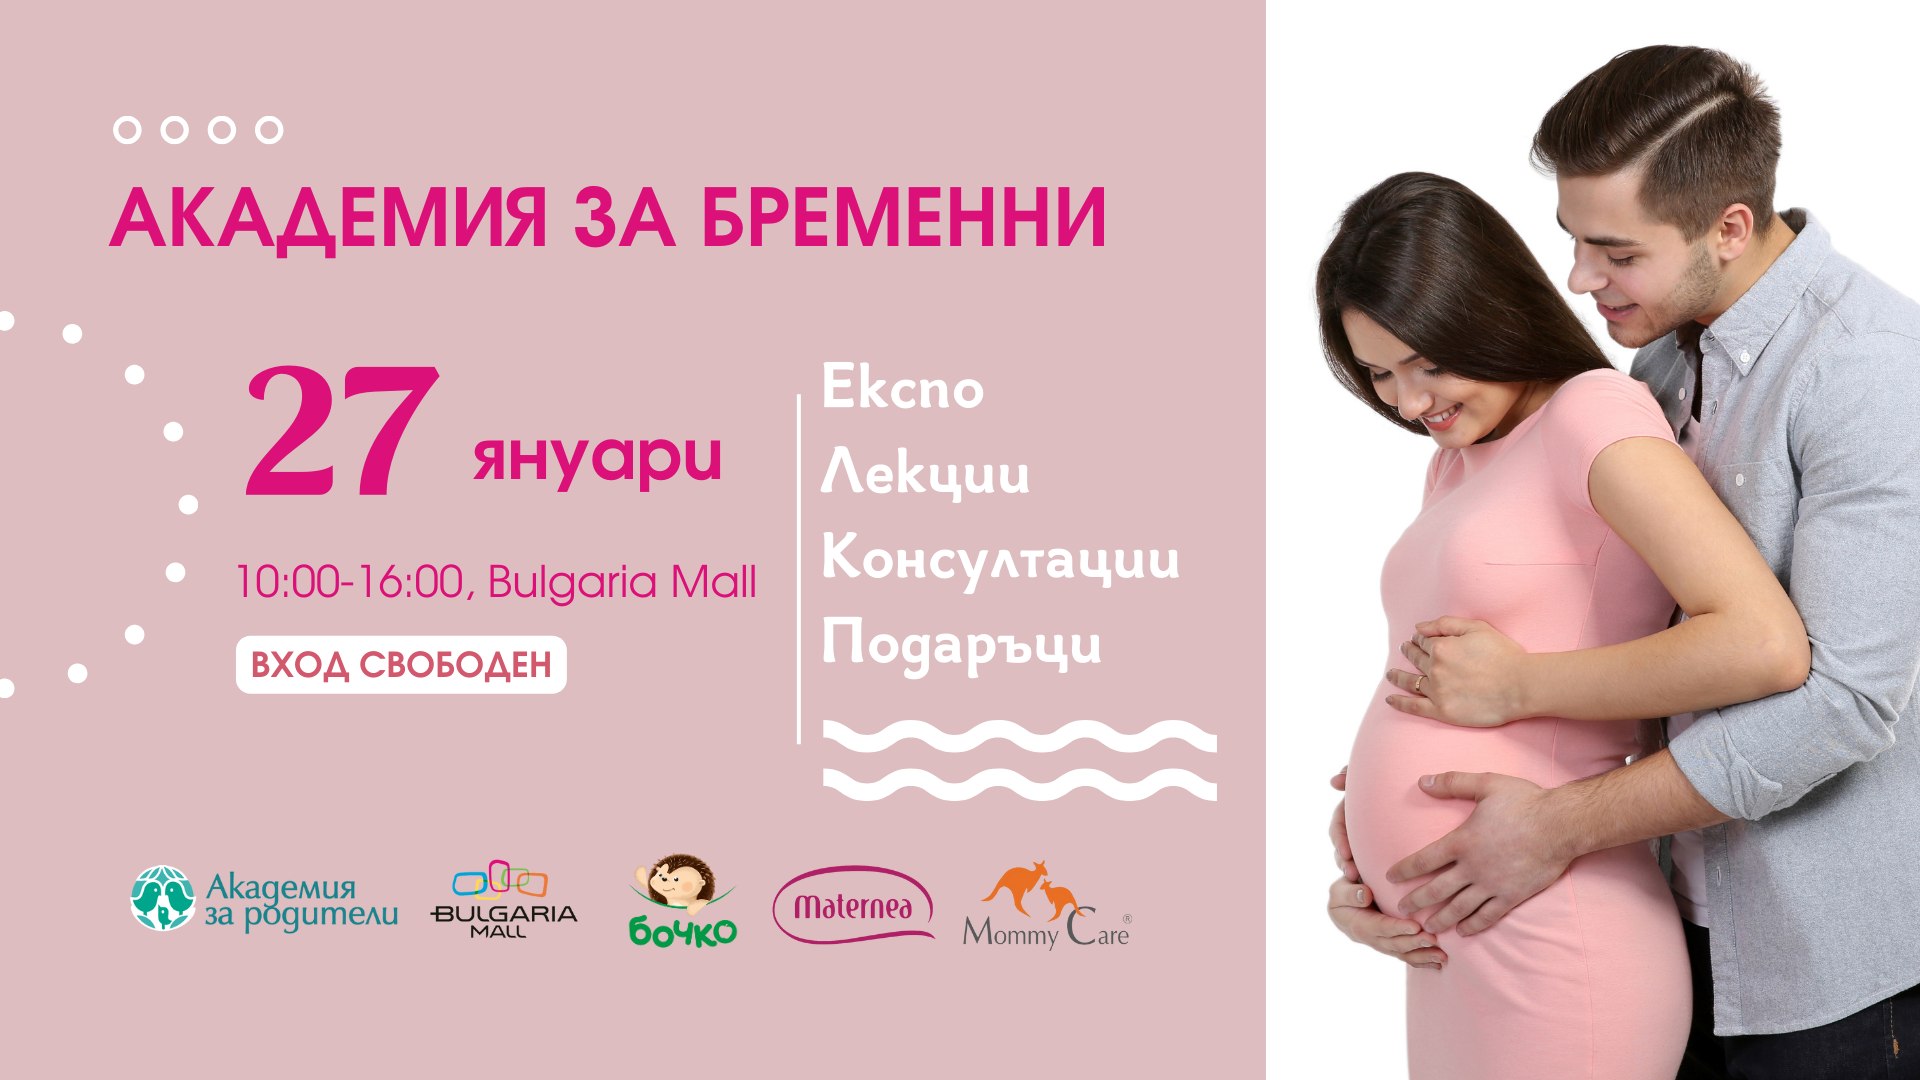 В София ще се проведе Академия за бременни на 27 януари